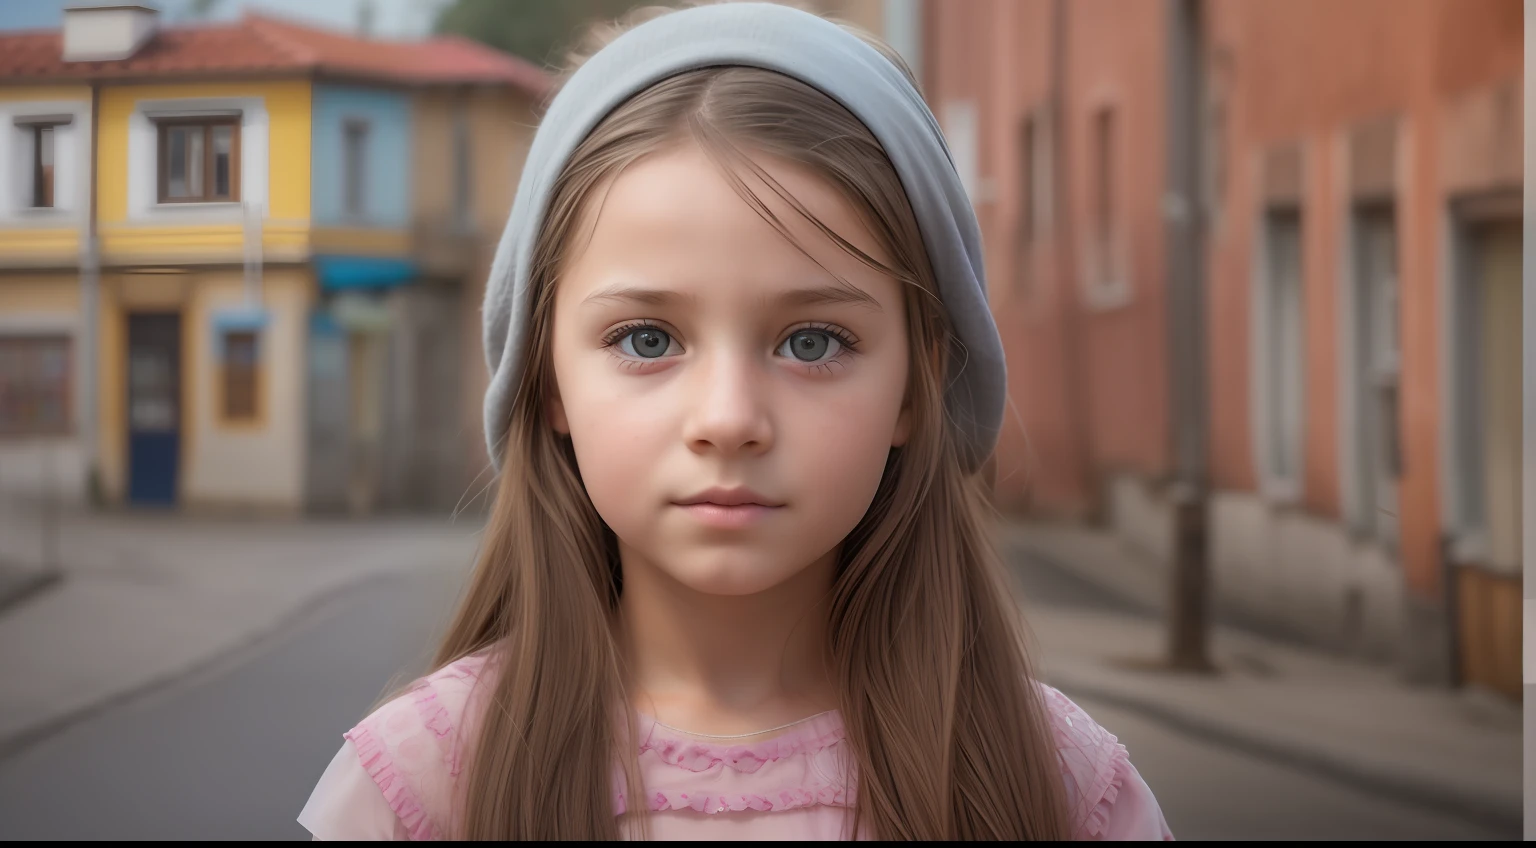 "قم بإنشاء صورة واقعية للغاية لفتاة من البوسنة تبلغ من العمر 10 سنوات بملامح وجه أصلية, تم وضعها على خلفية مدينة واقعية, عرض أفضل نوعية وتفاصيل معقدة."